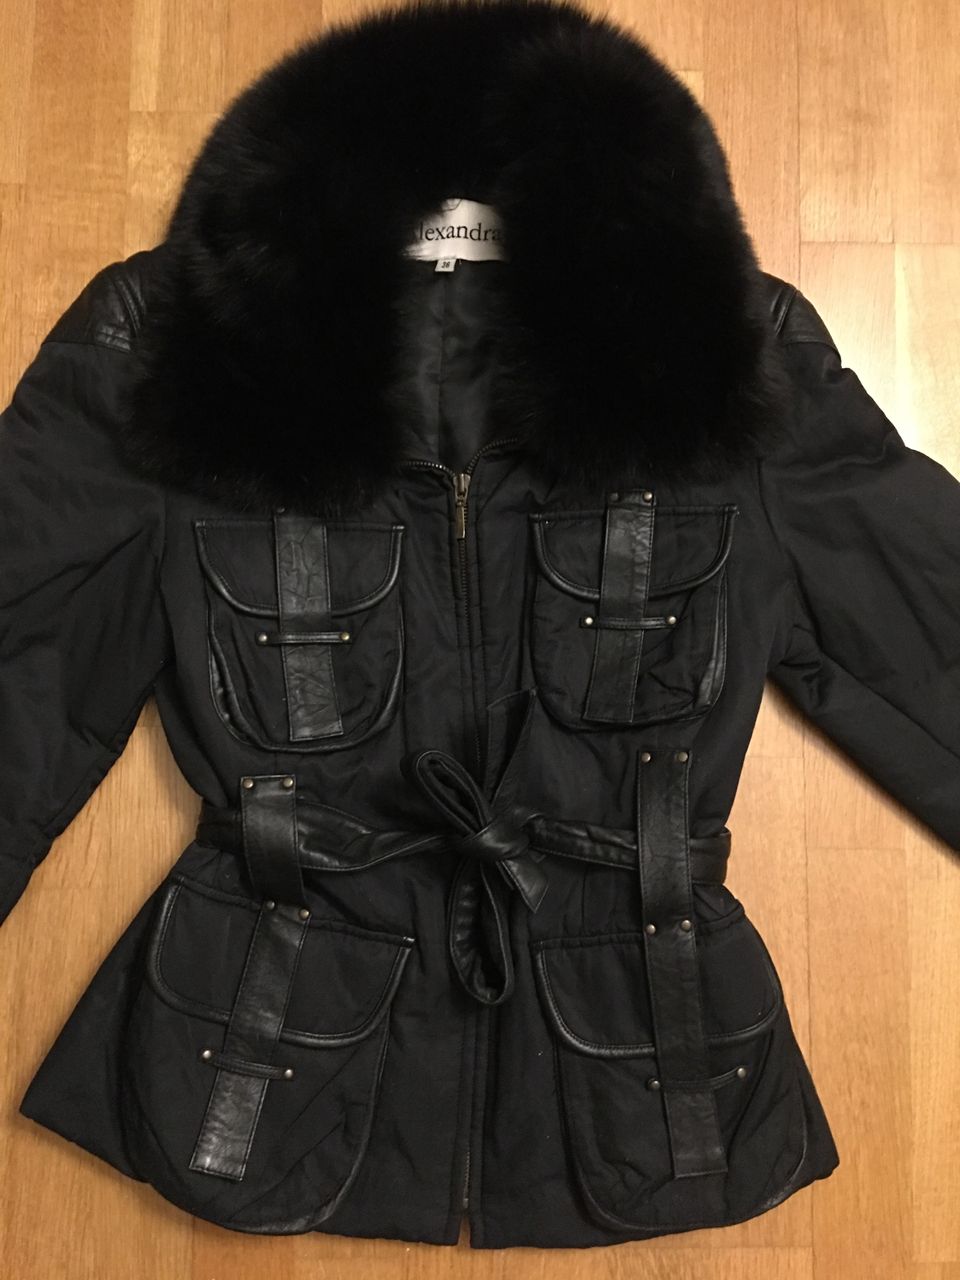 Musta takki Alexandra 36